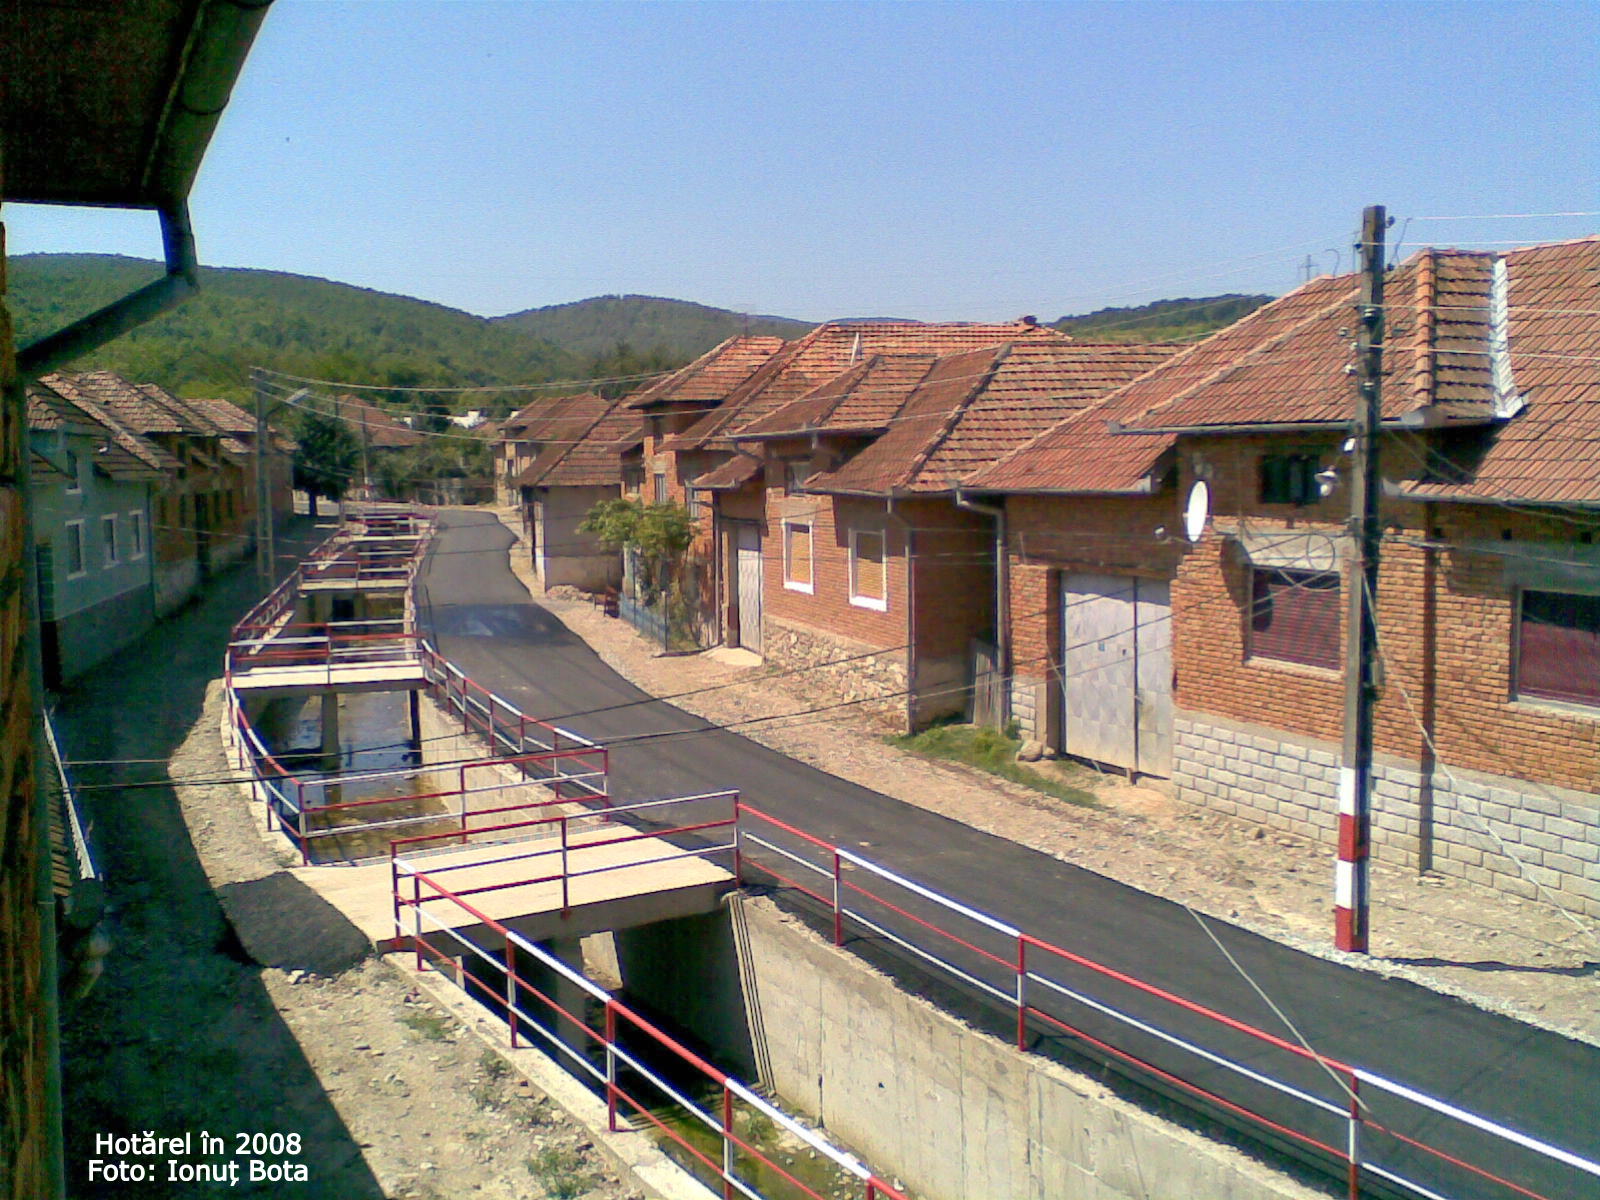 Hotarel, Bihor, Romania in 2008 ; satul Hotarel comuna Lunca judetul Bihor Romania